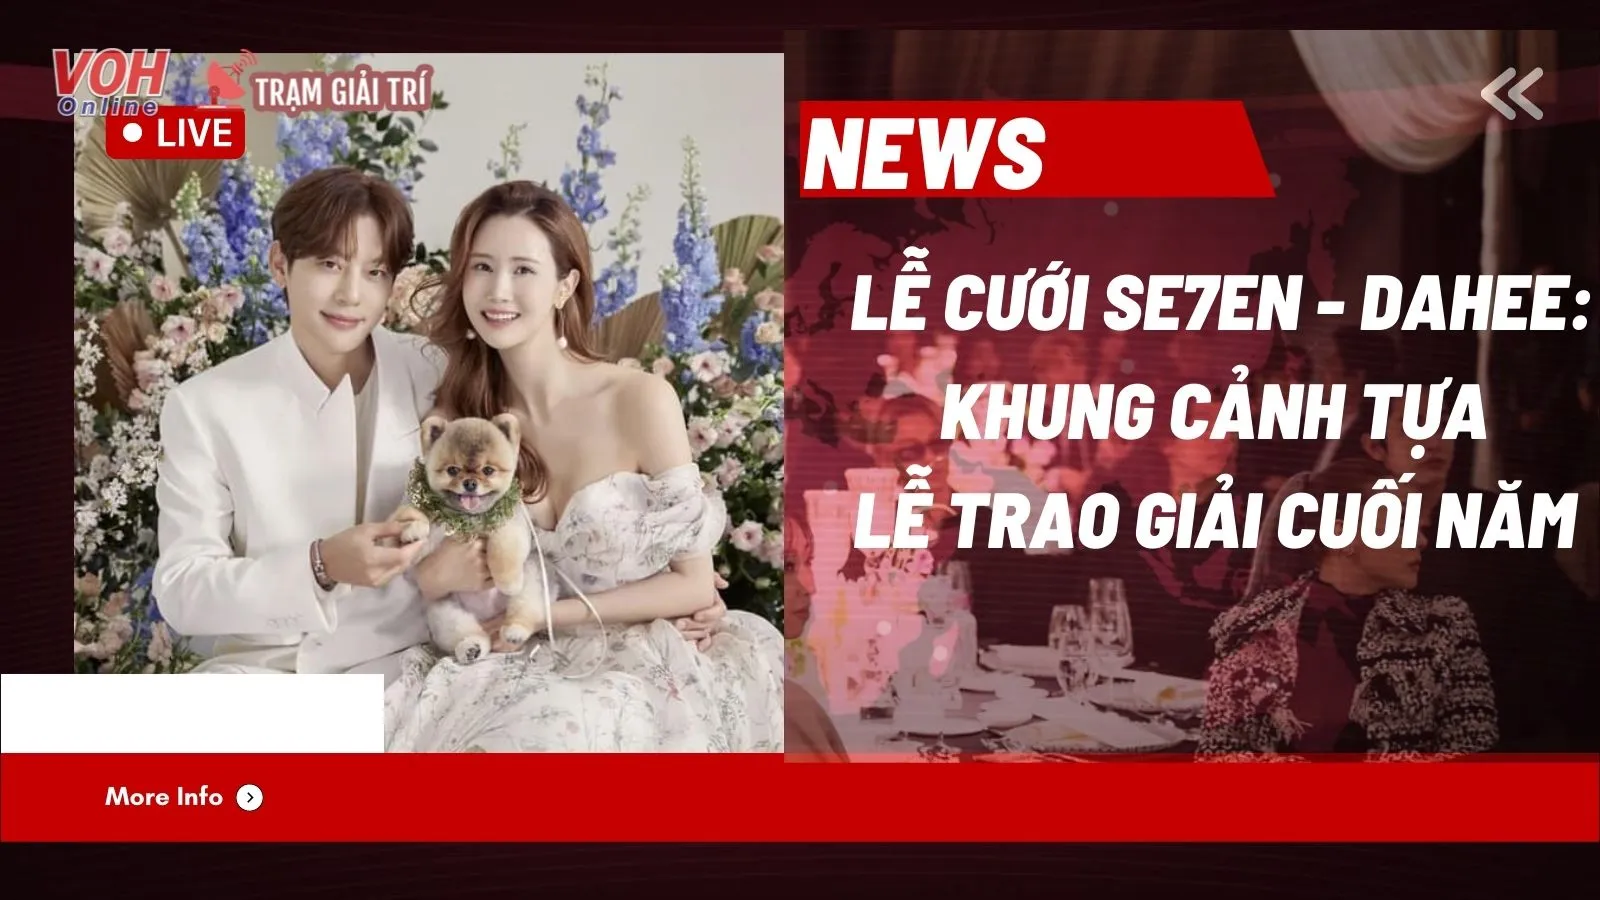 Vì sao nói Đám cưới Se7en, Lee Dahee không khác gì một lễ trao giải cuối năm?